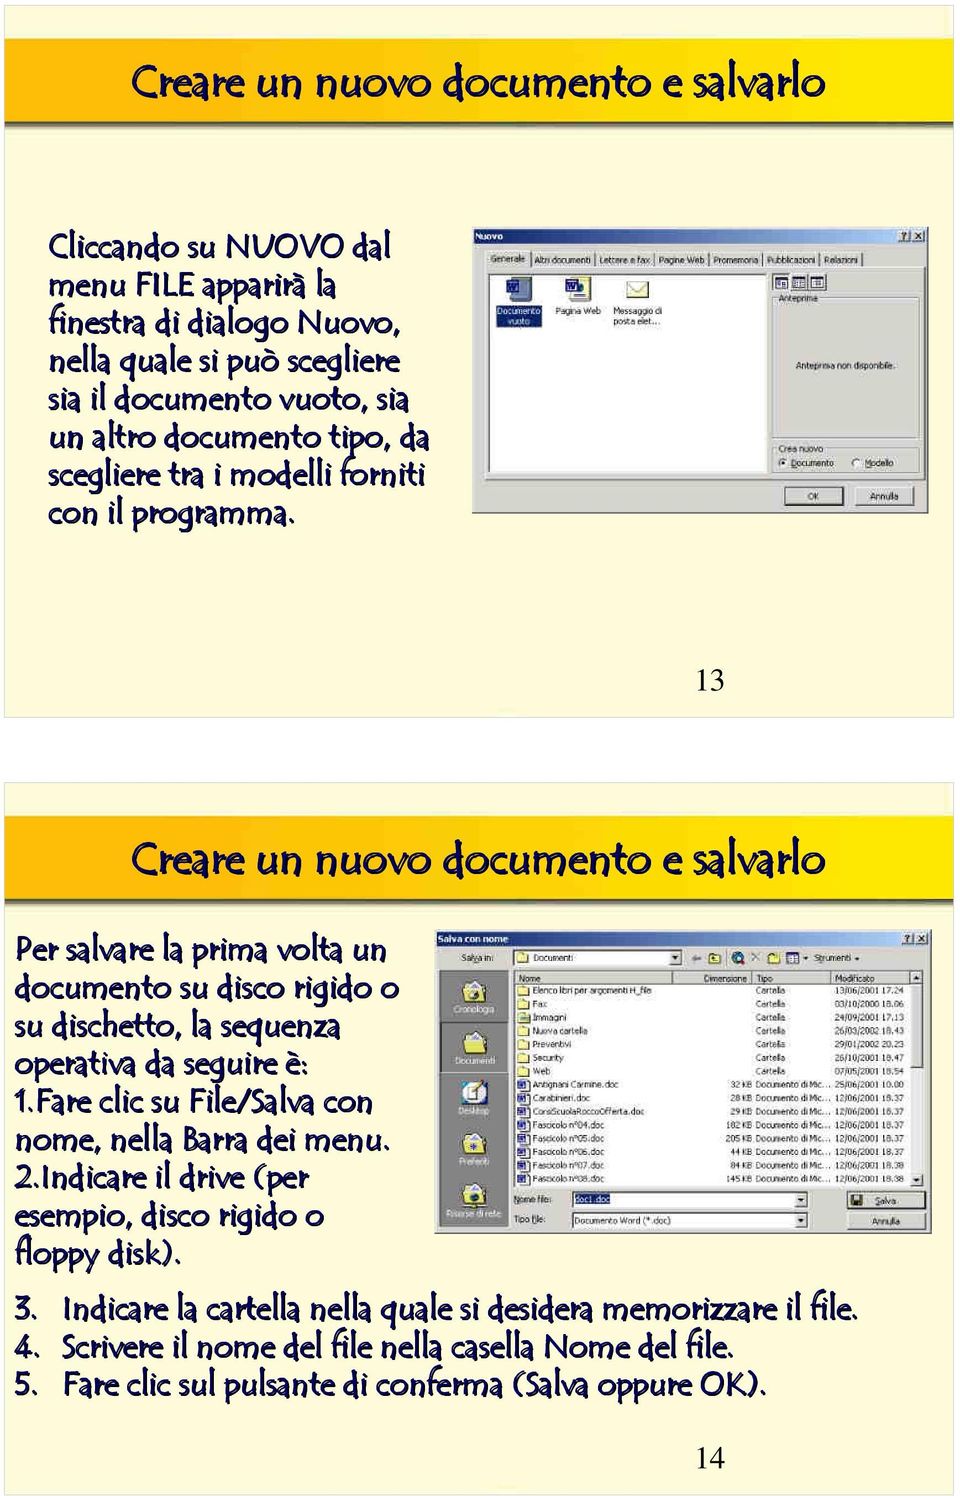 13 Creare un nuovo documento e salvarlo Per salvare la prima volta un documento su disco rigido o su dischetto, la sequenza operativa da seguire è: 1.